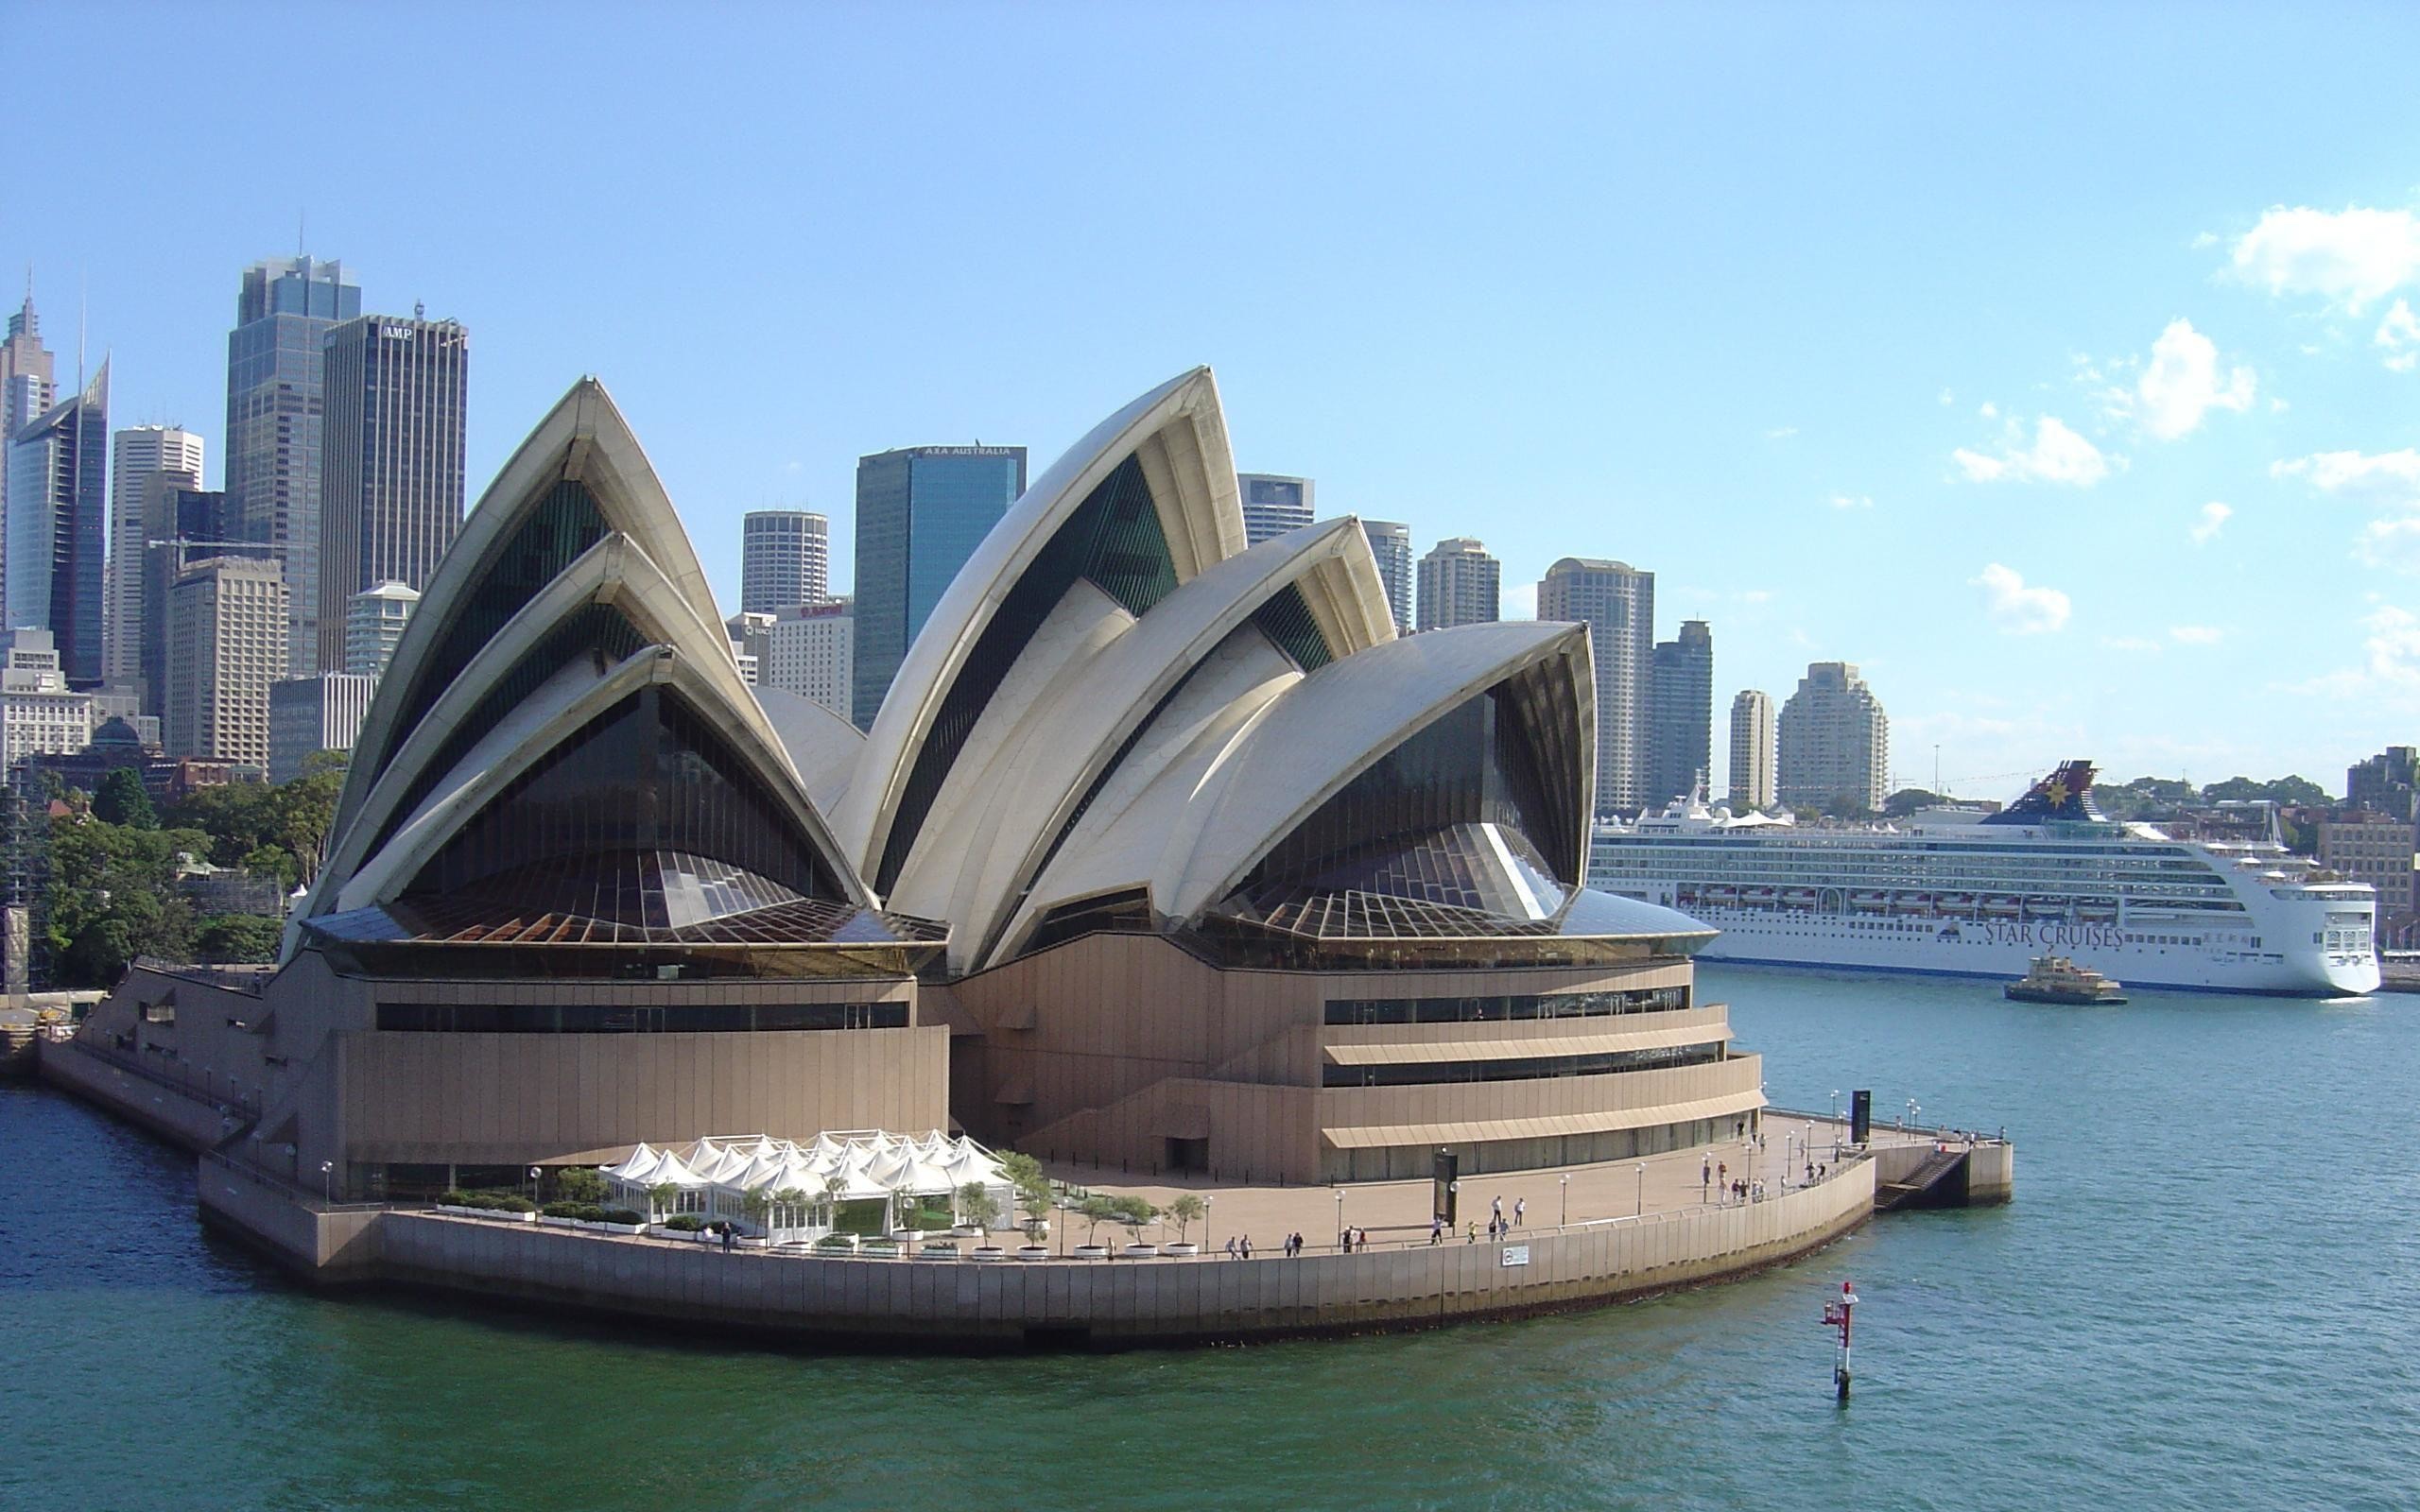 Название стран достопримечательности. Сиднейский оперный театр, Сидней, Австралия. Оперный театр в Сиднее Австралия. Опера Хаус Сидней Австралия. Сиднейский оперный театр достопримечательности Сиднея.